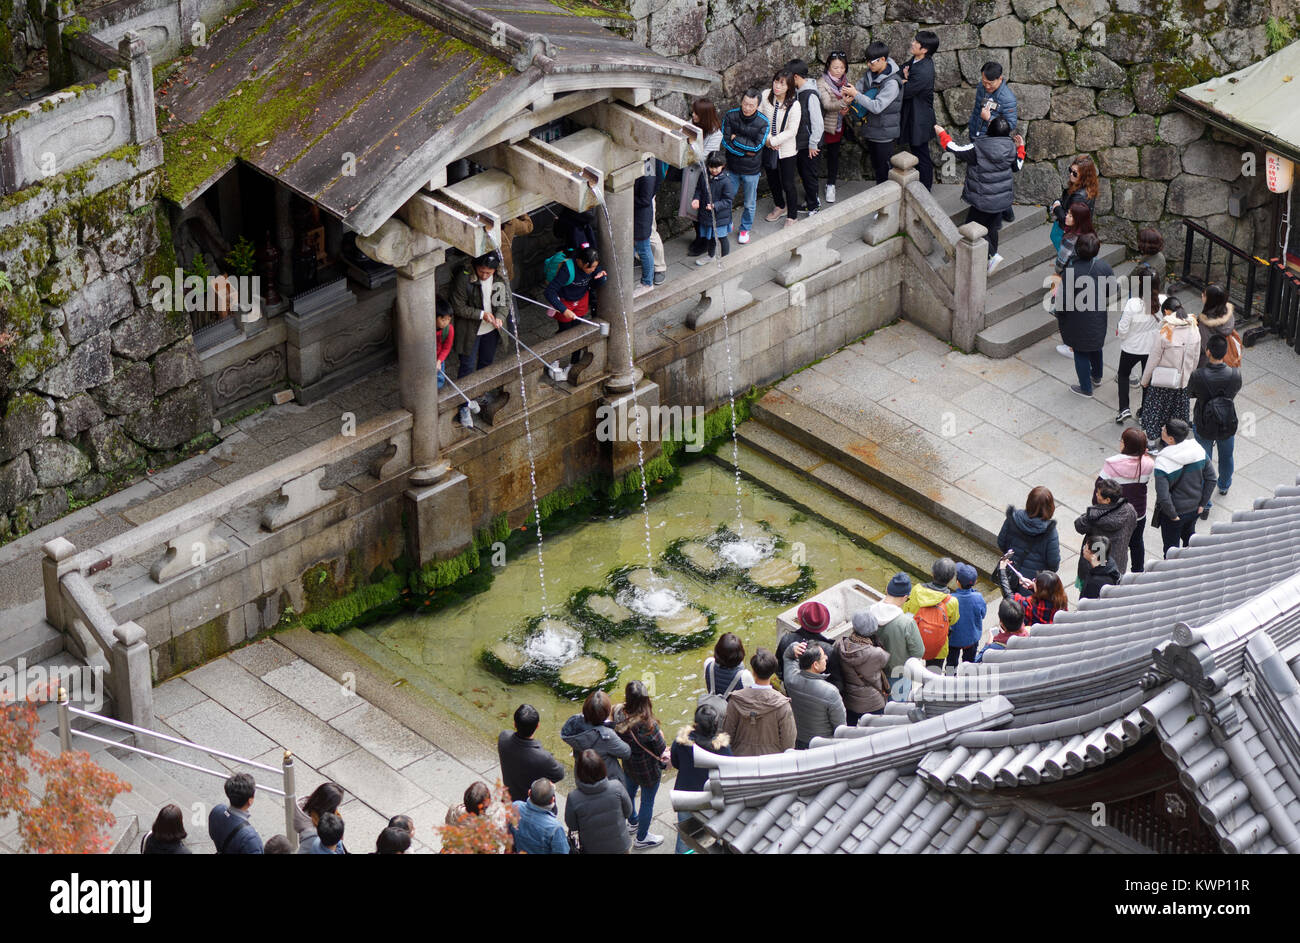 Licenza e stampe alle MaximImages.com:00 - Kiyomizu-dera, Kyoto, foto di viaggio in Giappone Foto Stock